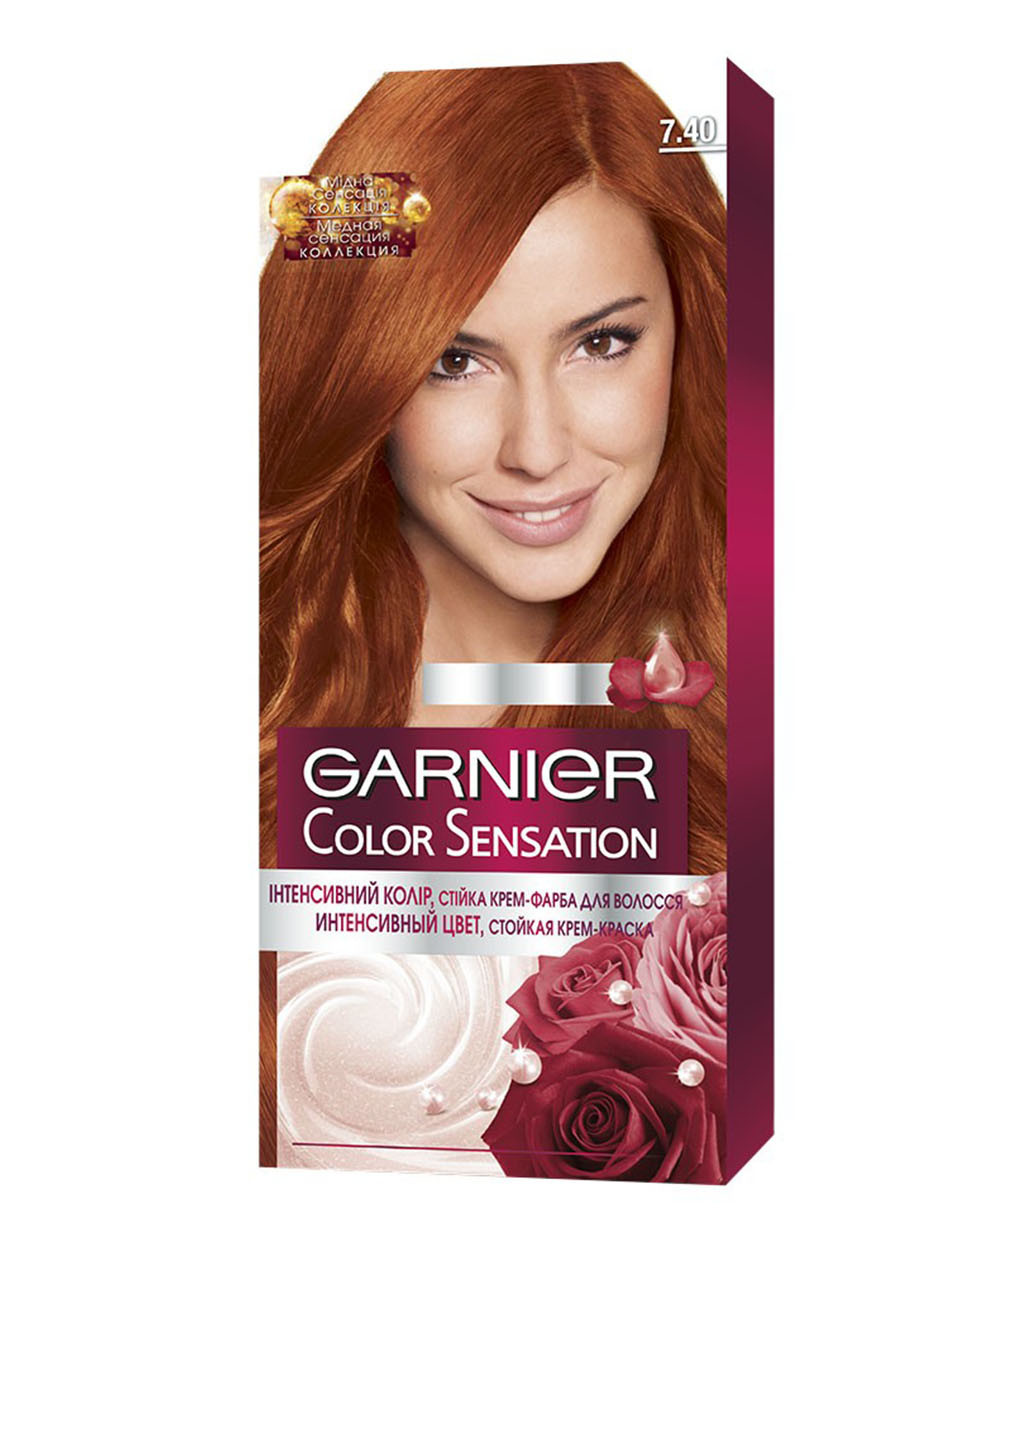 7.40, крем-фарба для волосся стійка Color Sensation (бурштиновий яскраво-рудий), 110 мл Garnier (75100407)